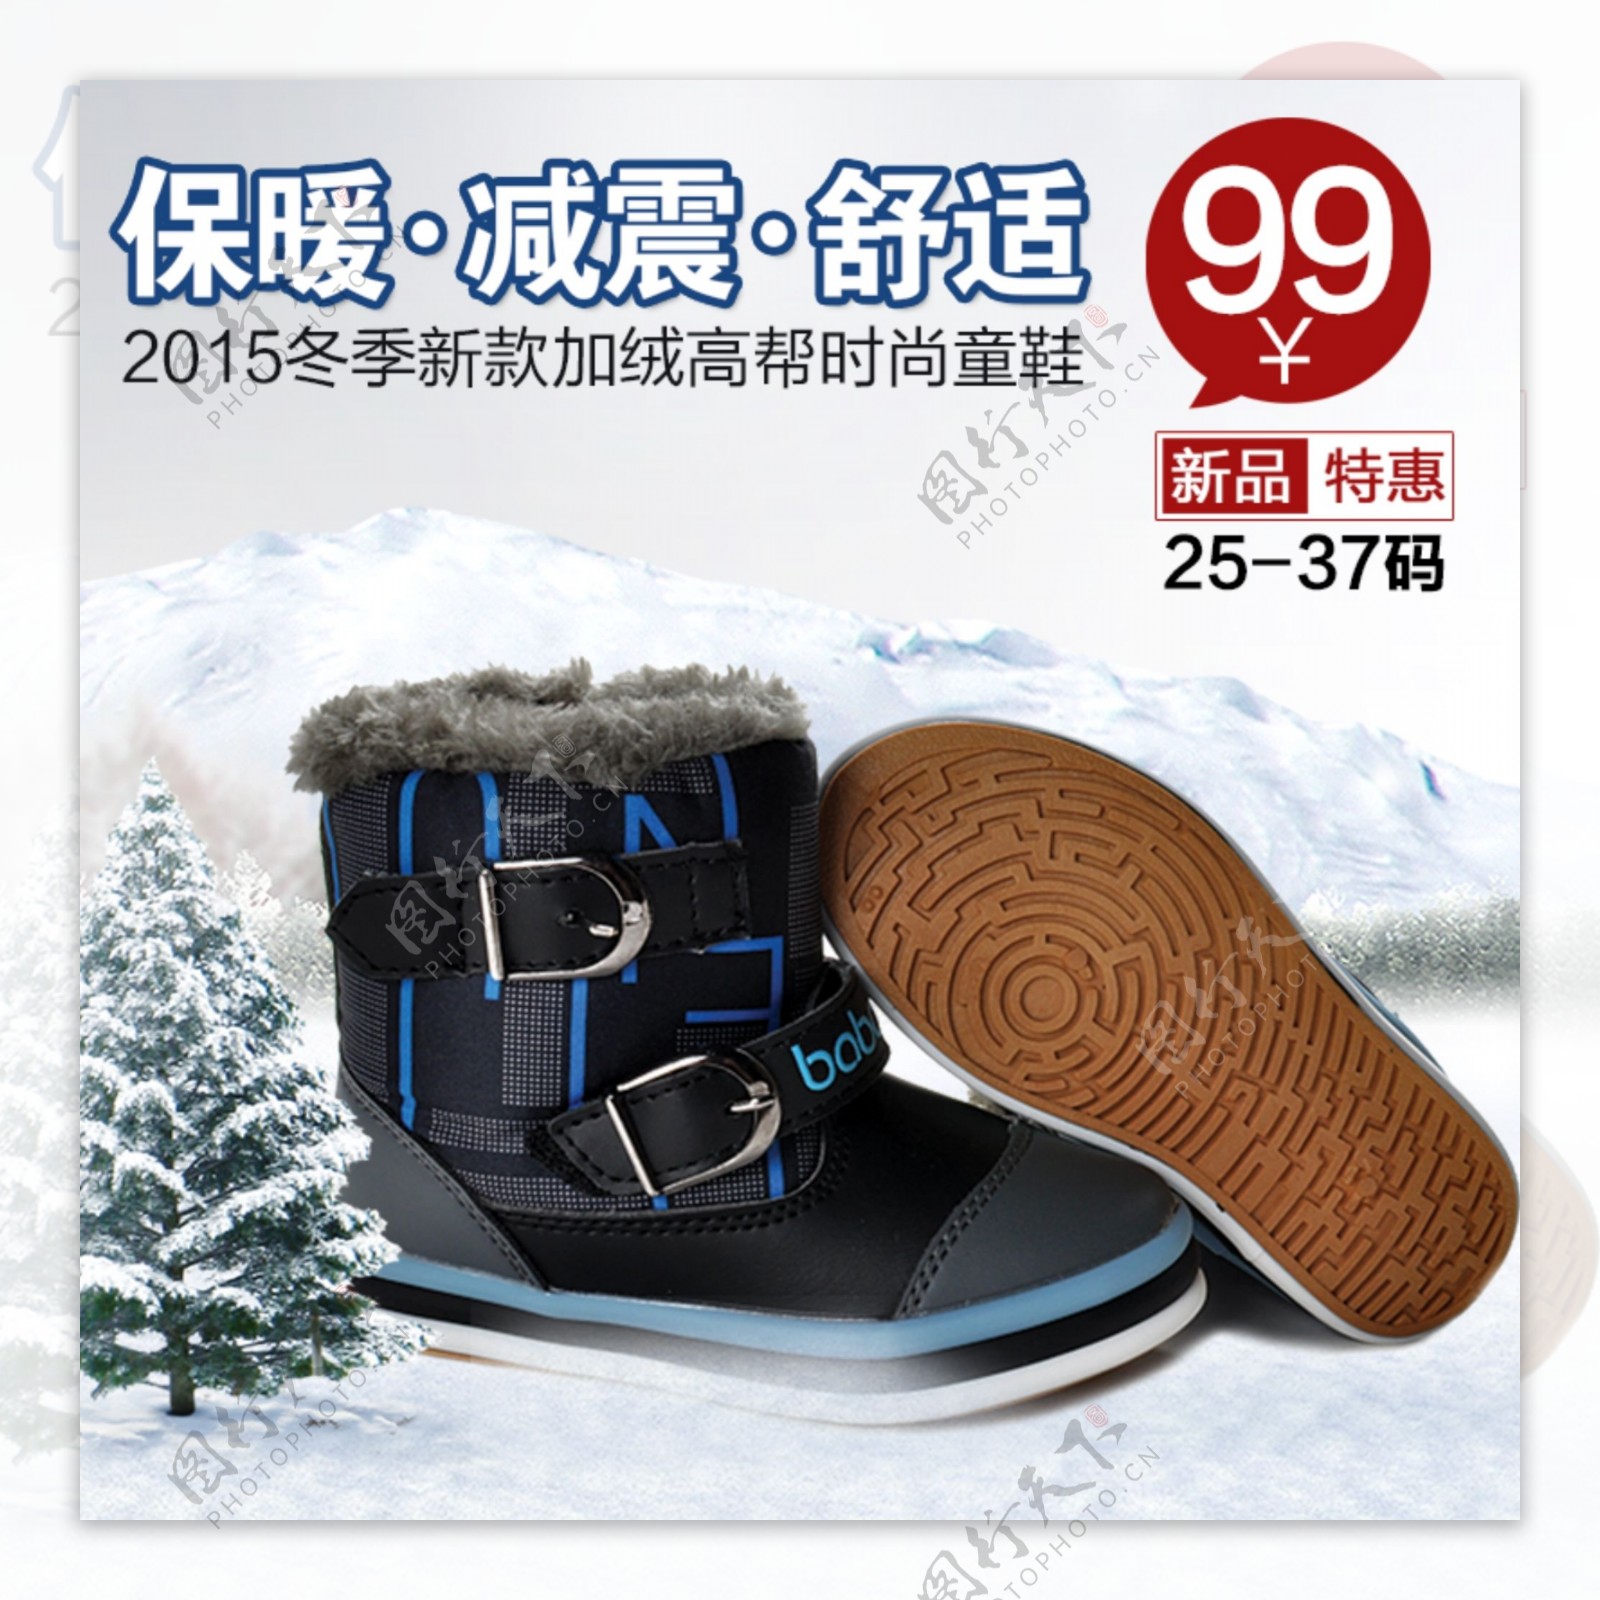 冬季保暖鞋促销淘宝直通车设计